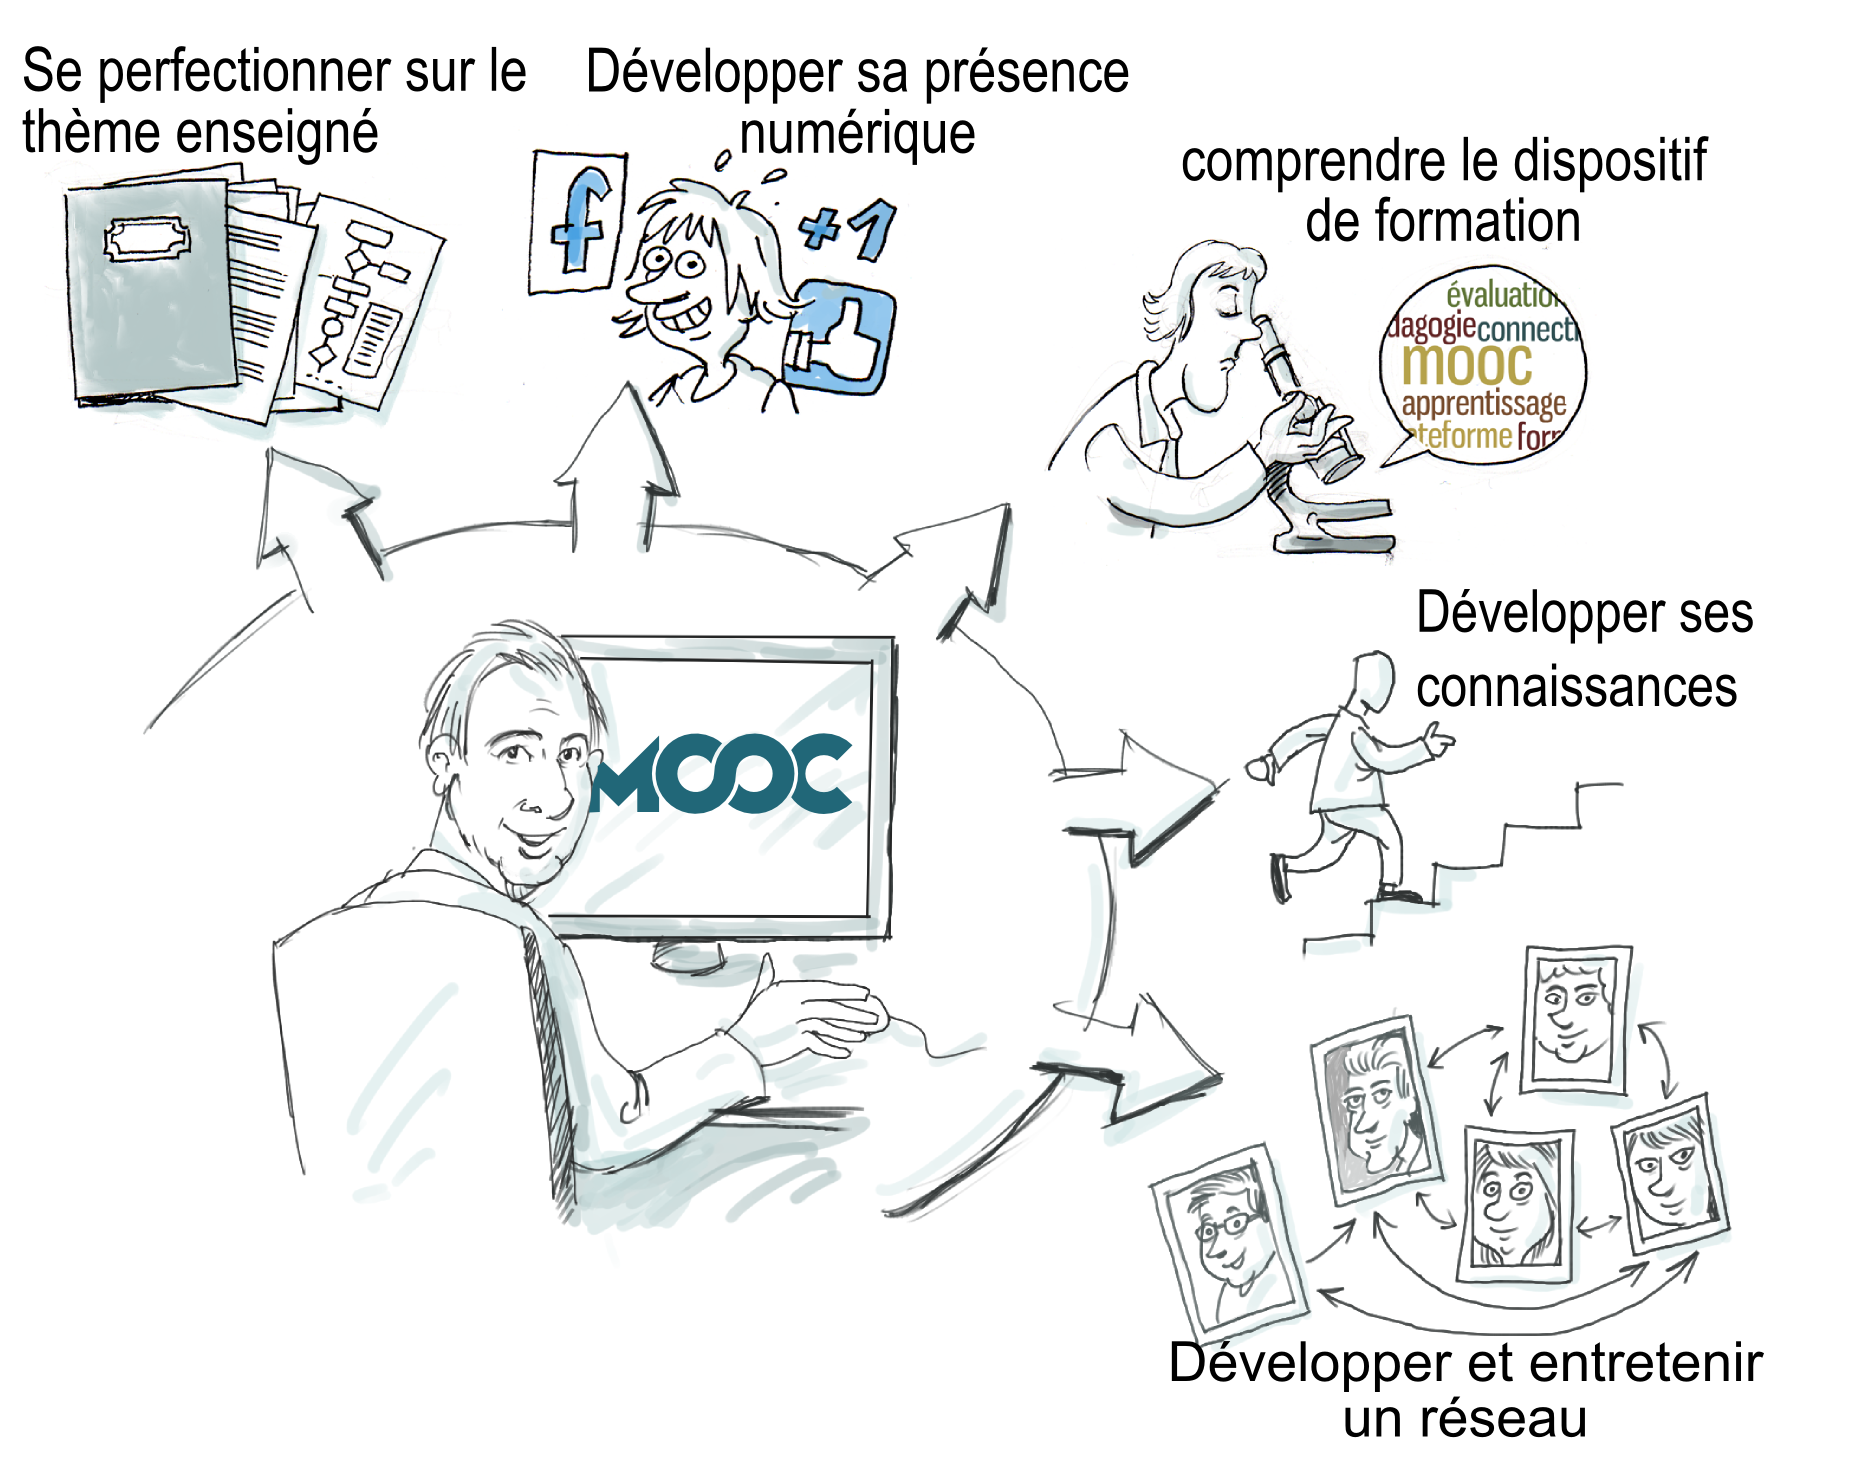 Les intentions des apprenants de MOOC | Isabelle Quentin